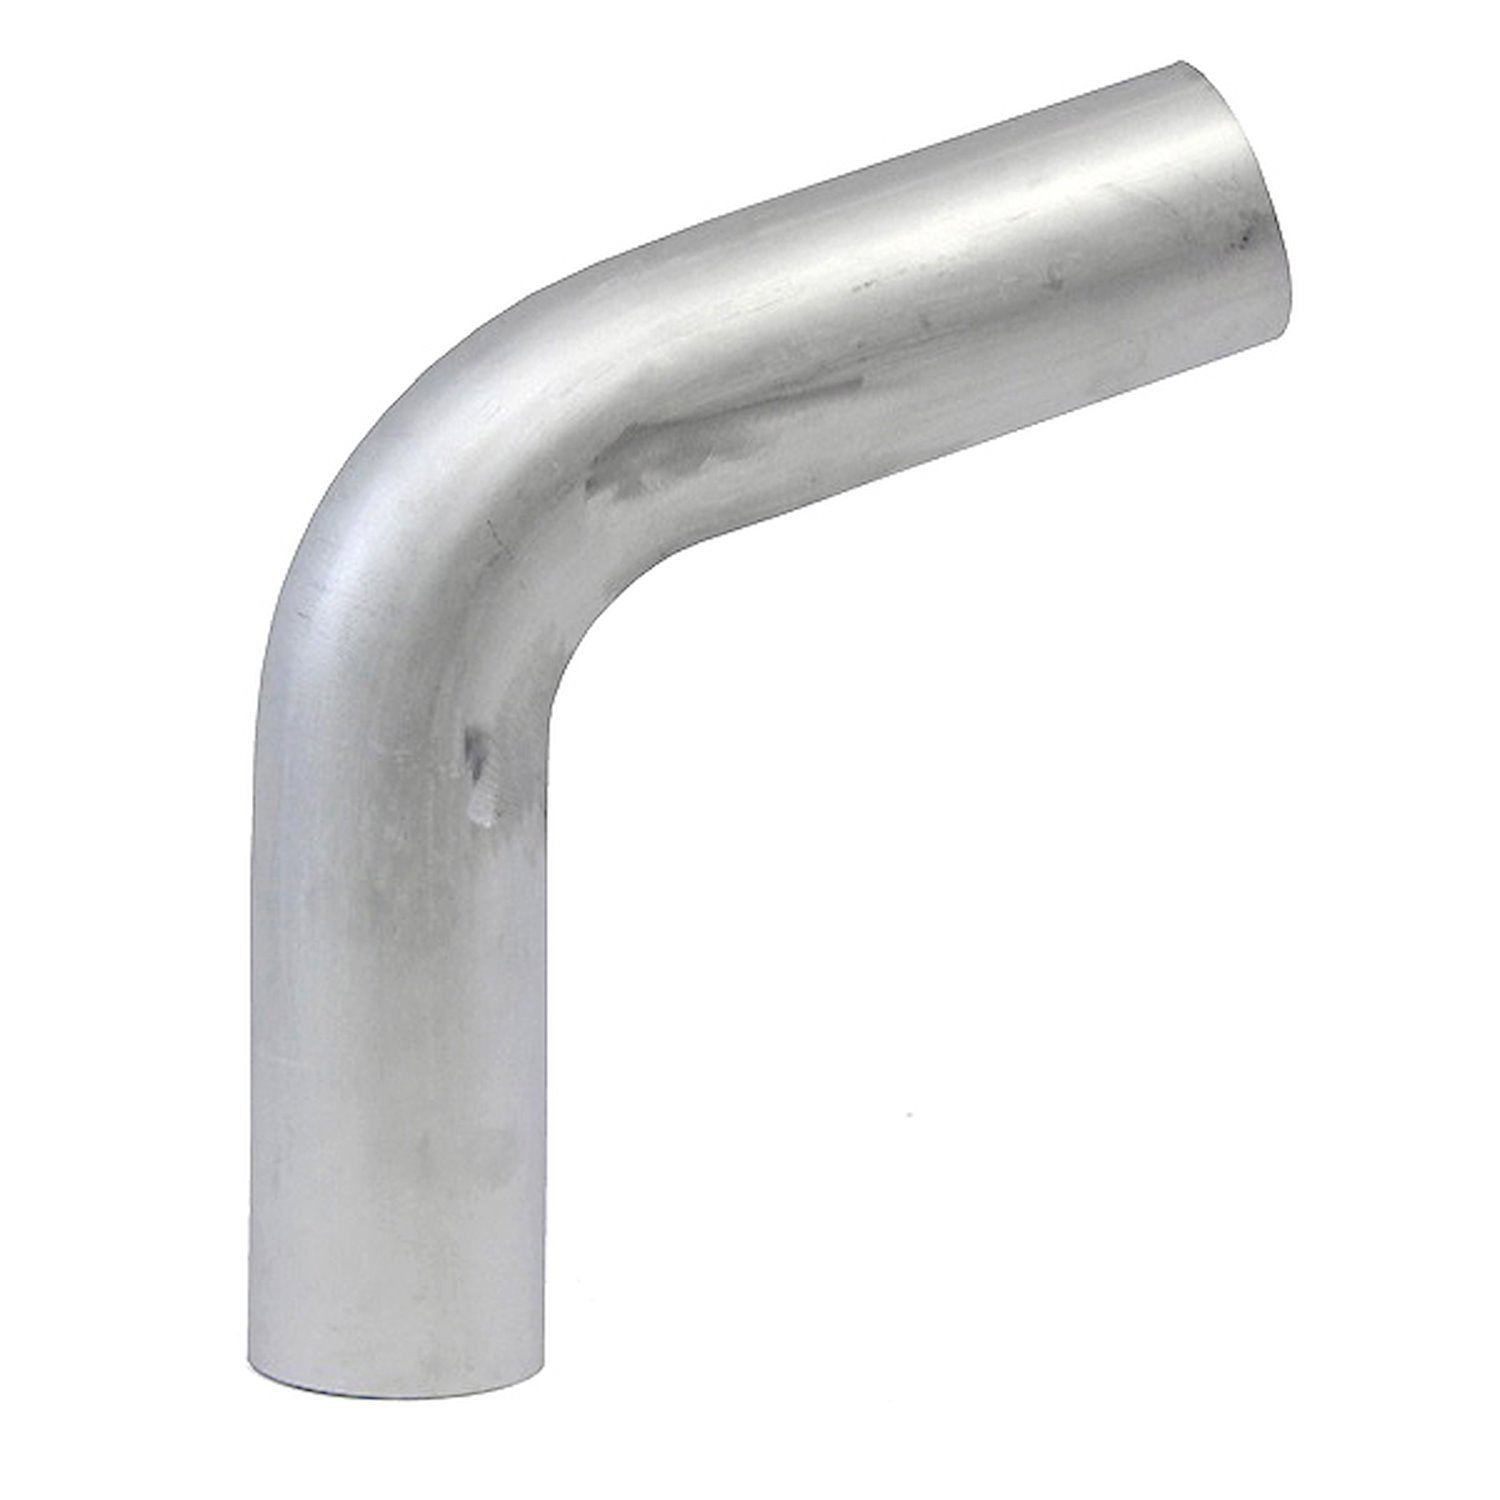 AT70-250-CLR-25 Aluminum Elbow Tube, 6061 Aluminum, 70-Degree Bend Elbow Tubing, 2-1/2 in. OD, Tight Radius, 2-1/2 in. CLR